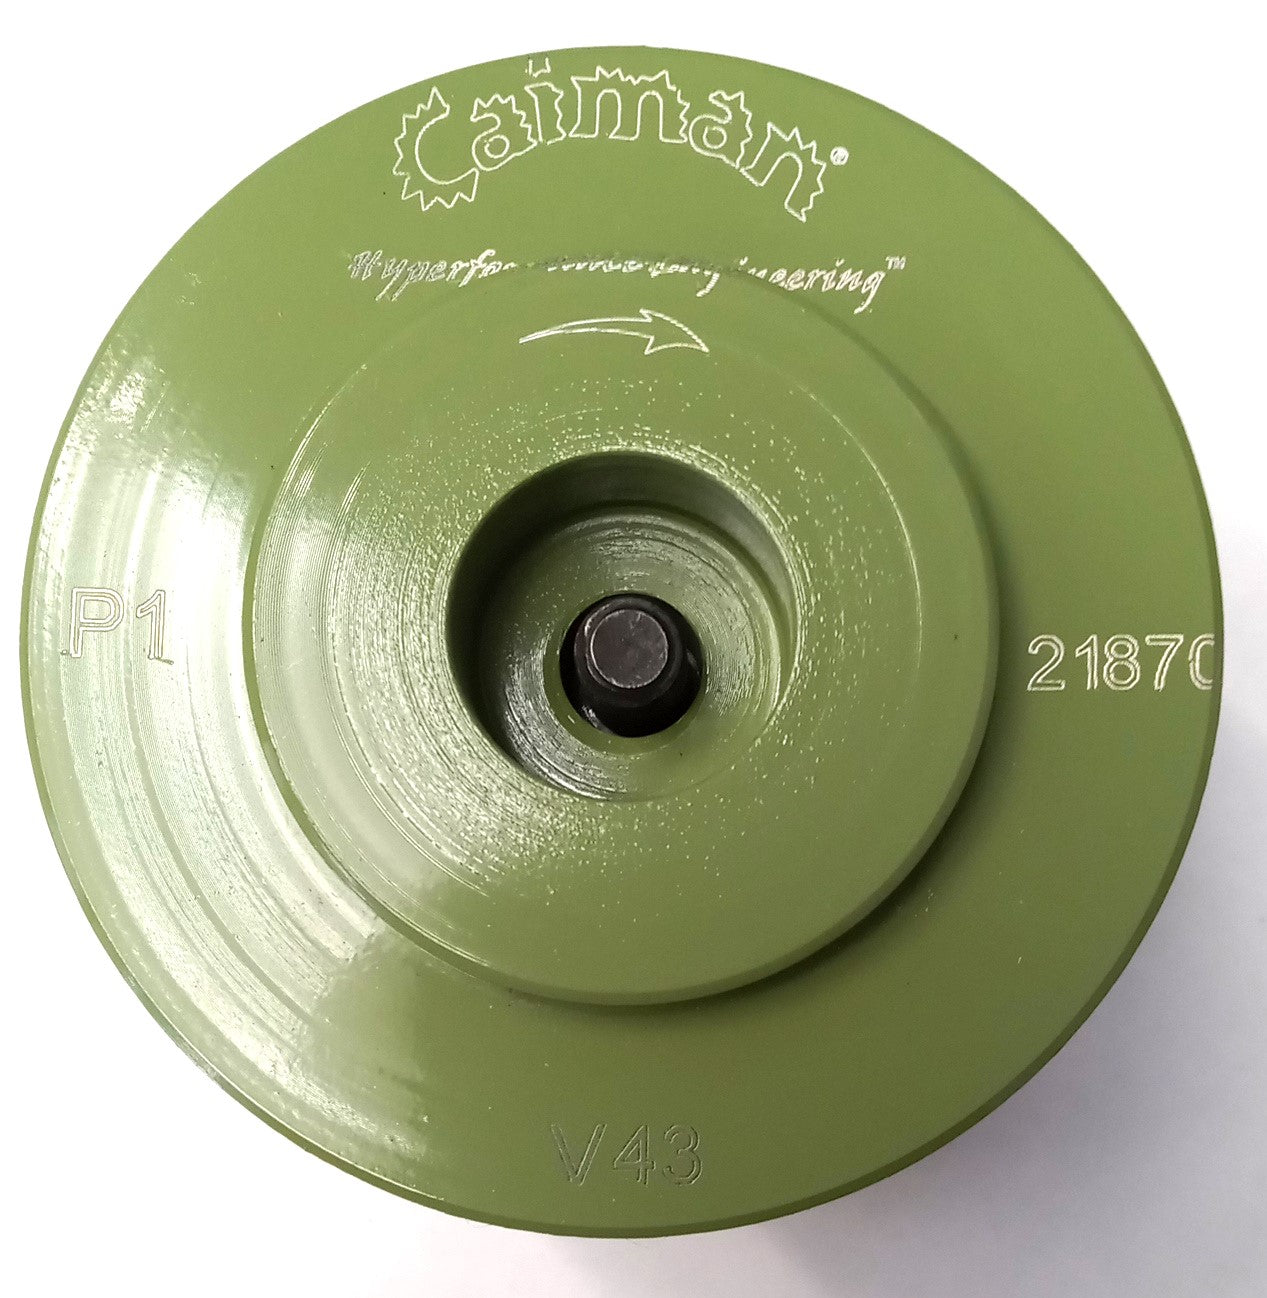 Caiman 21870 43mm Full Bullnose Diamond Profiling Wheel